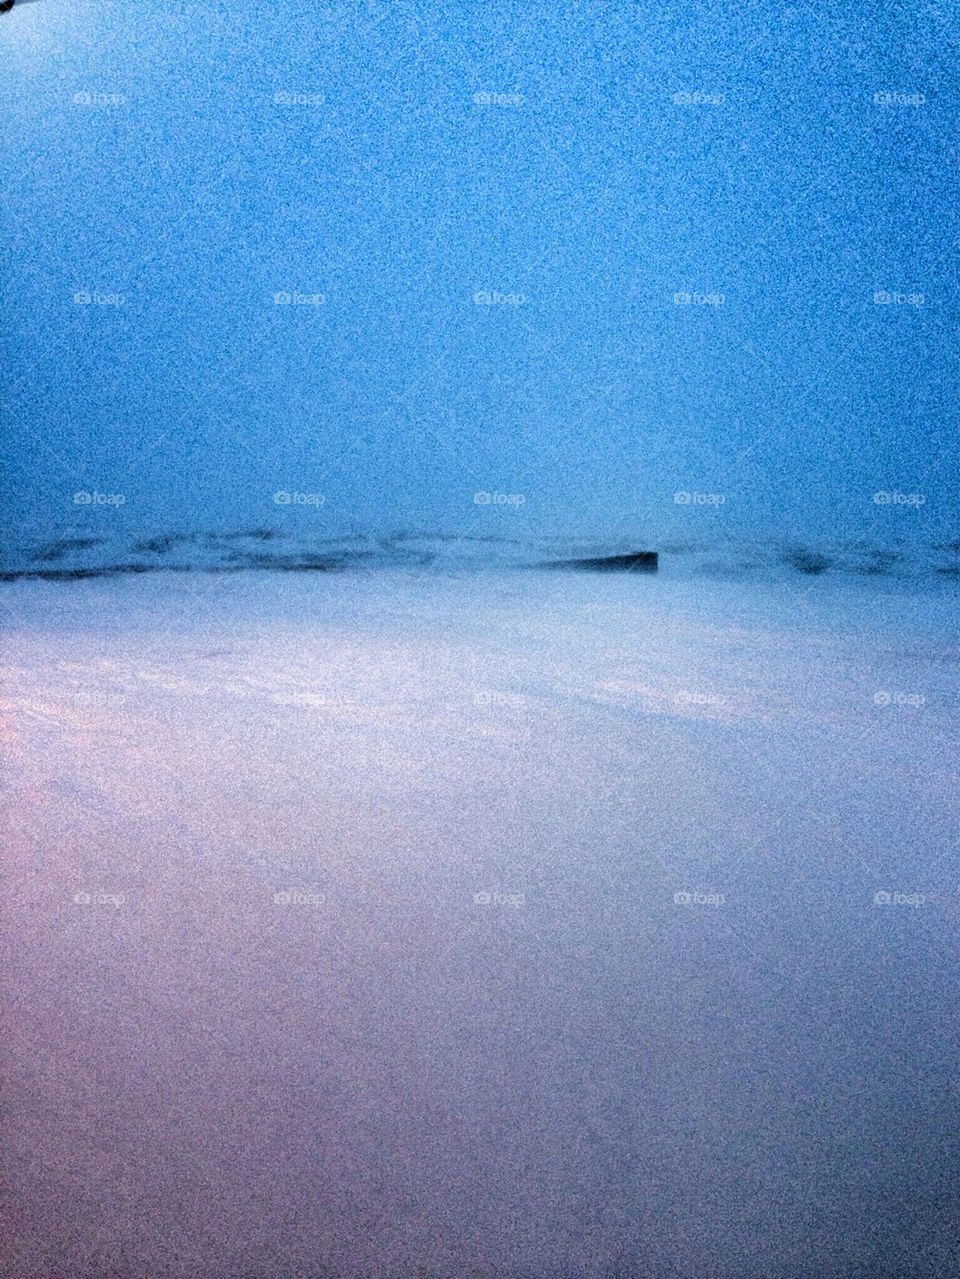 Lake Michigan at 7:15 am